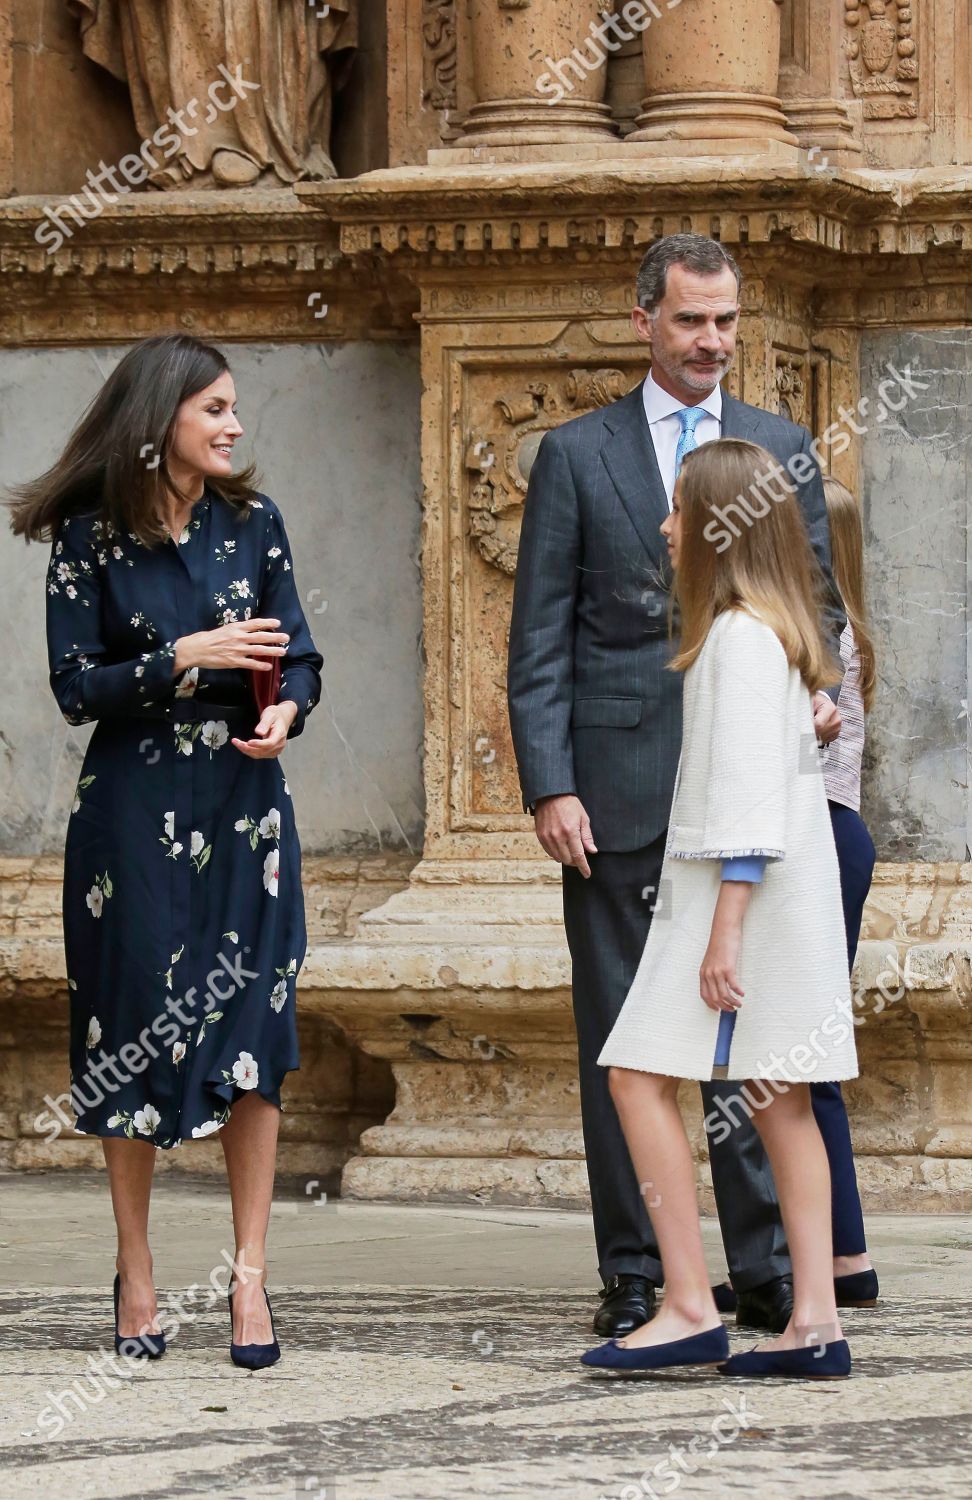 spanish-royal-family-attend-mass-madrid-spain-shutterstock-editorial-10215862al.jpg